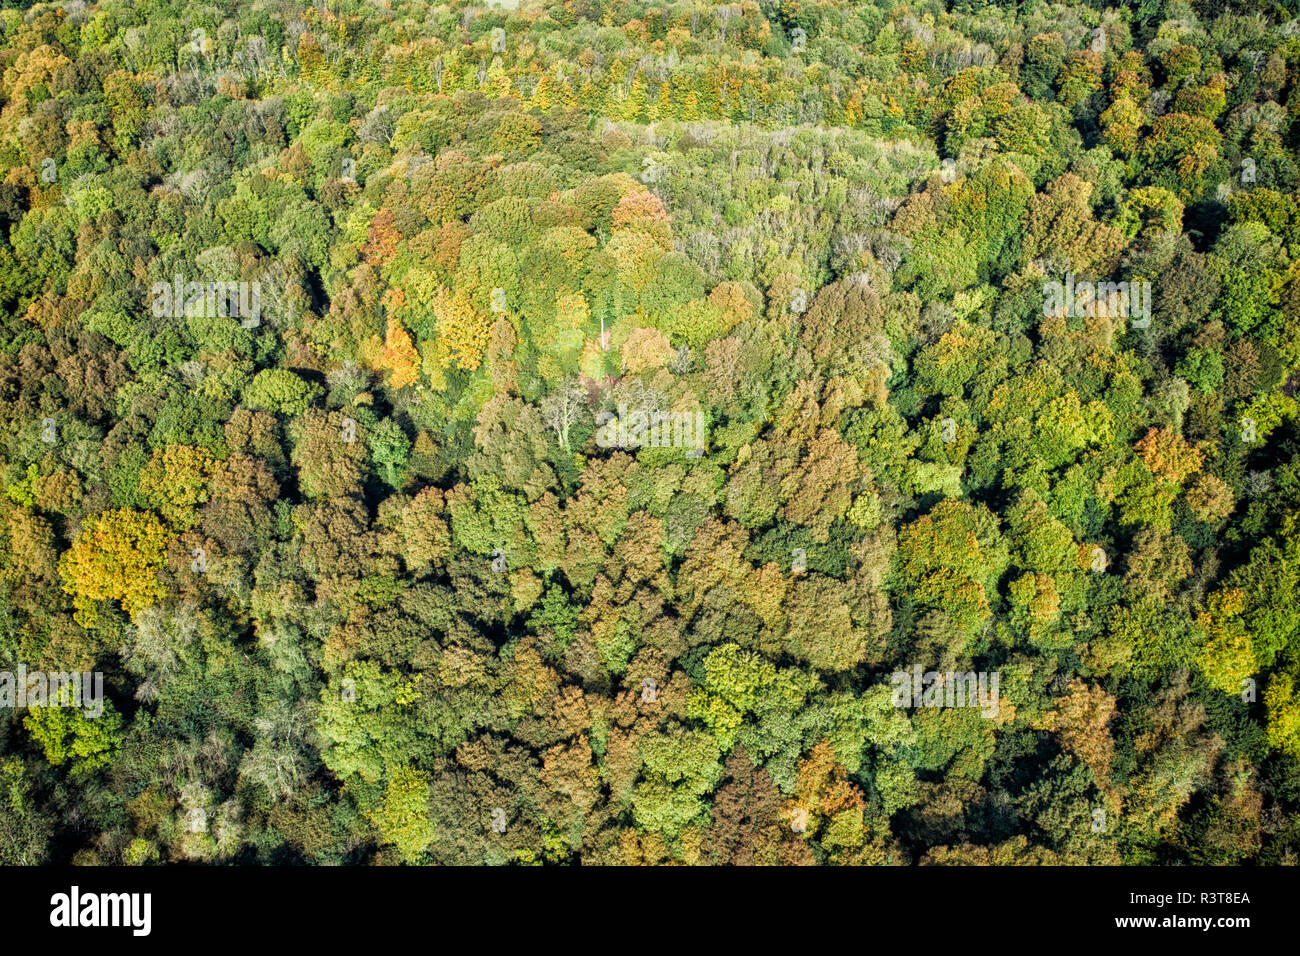 England, Wales, herbstlichen Wald von oben gesehen Stockfoto